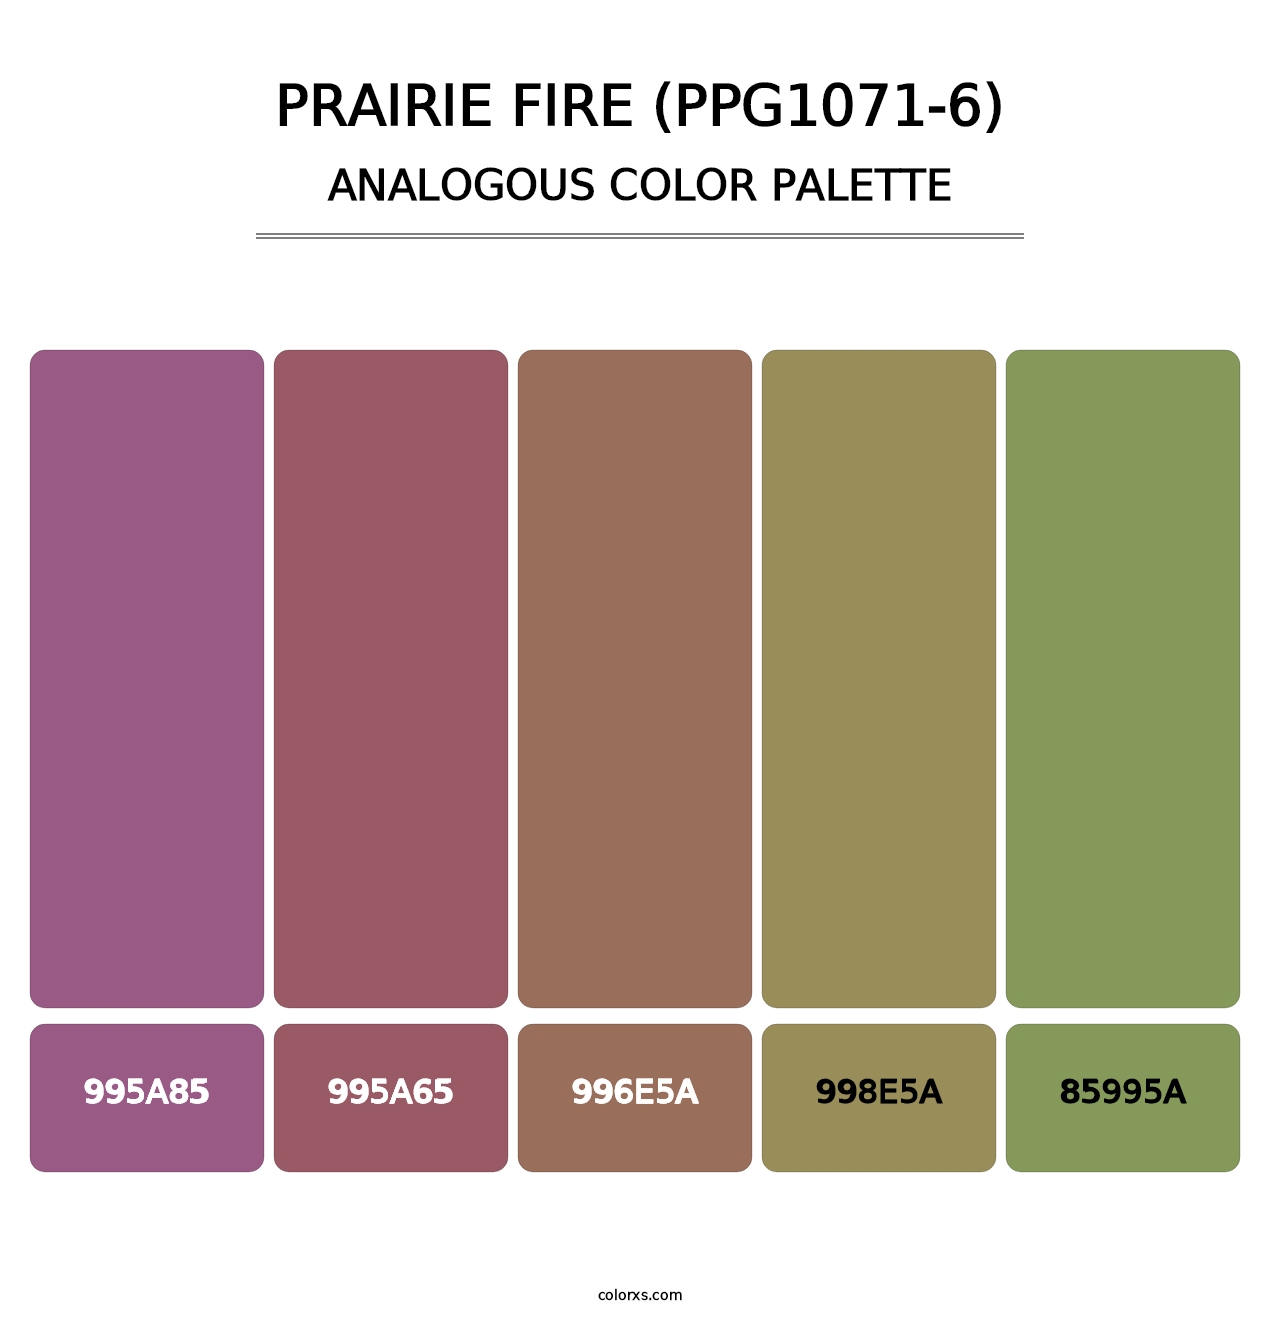 Prairie Fire (PPG1071-6) - Analogous Color Palette